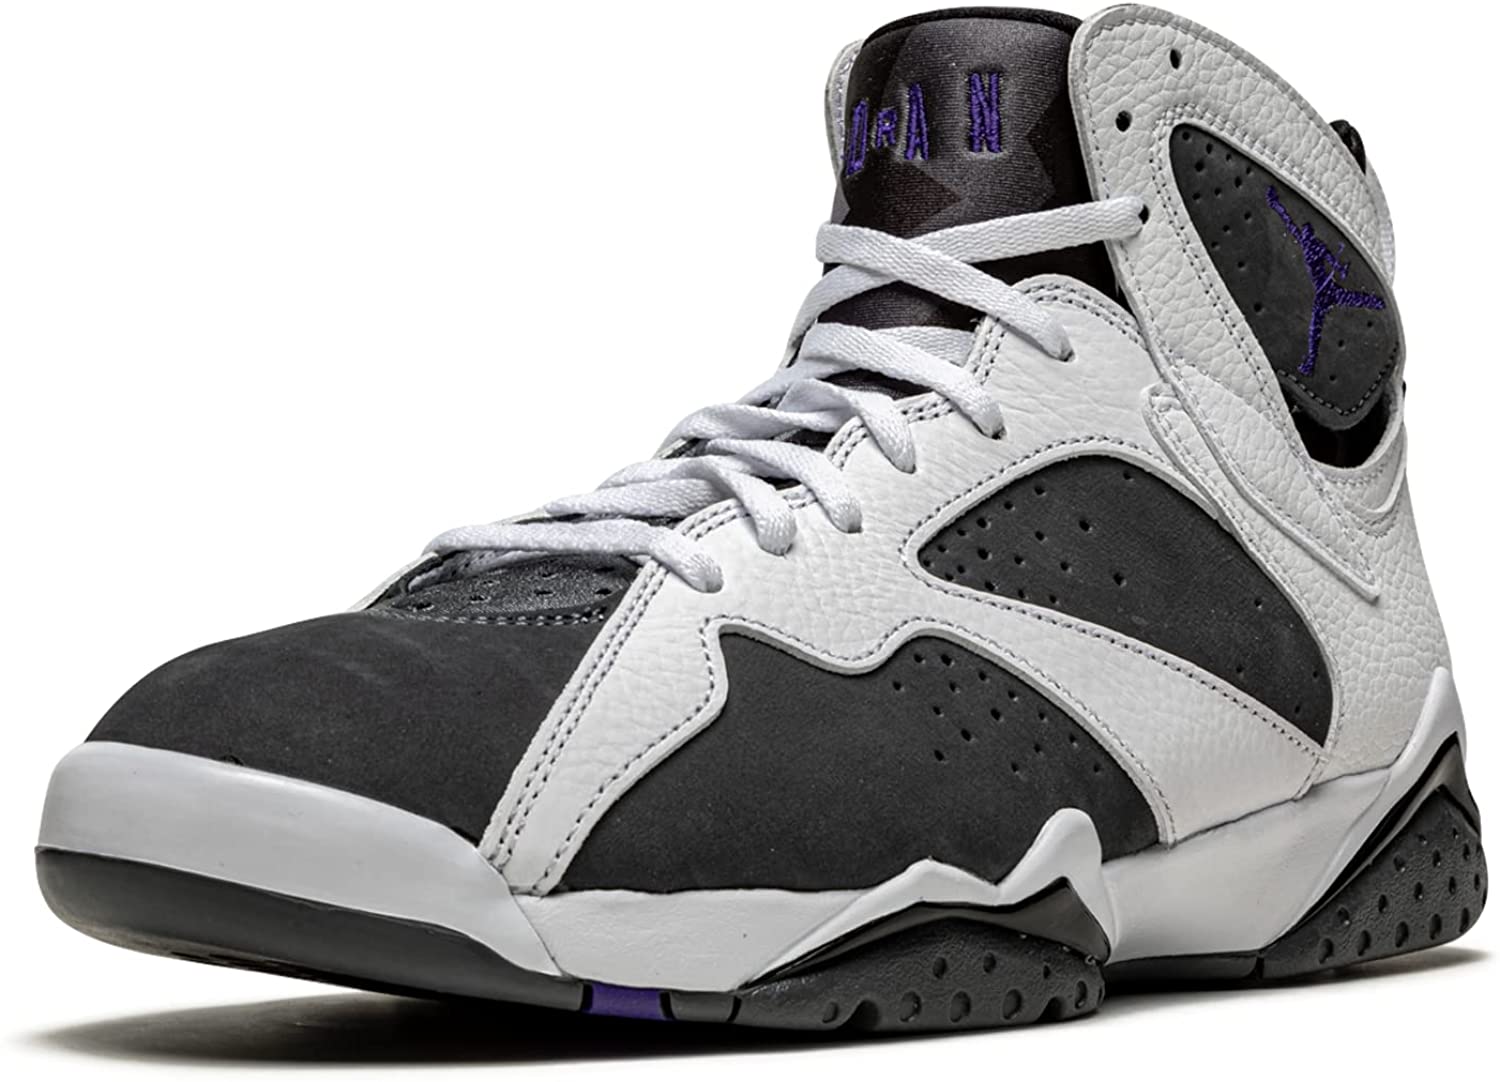 Air Jordan Men's 7 Retro Flint Sneaker - image 3 of 5